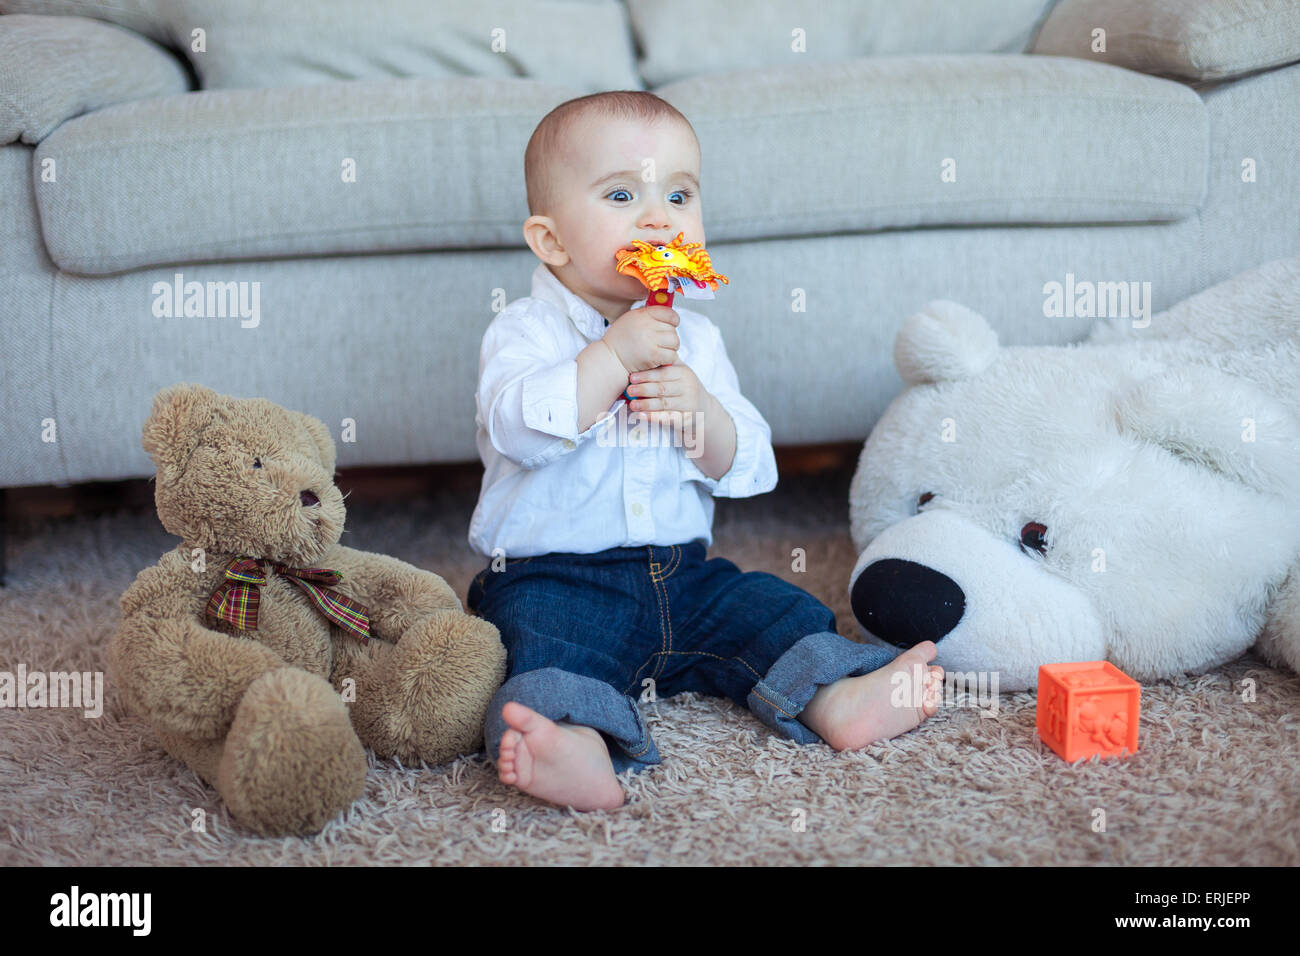 Bébé garçon ludique avec des jouets Banque D'Images